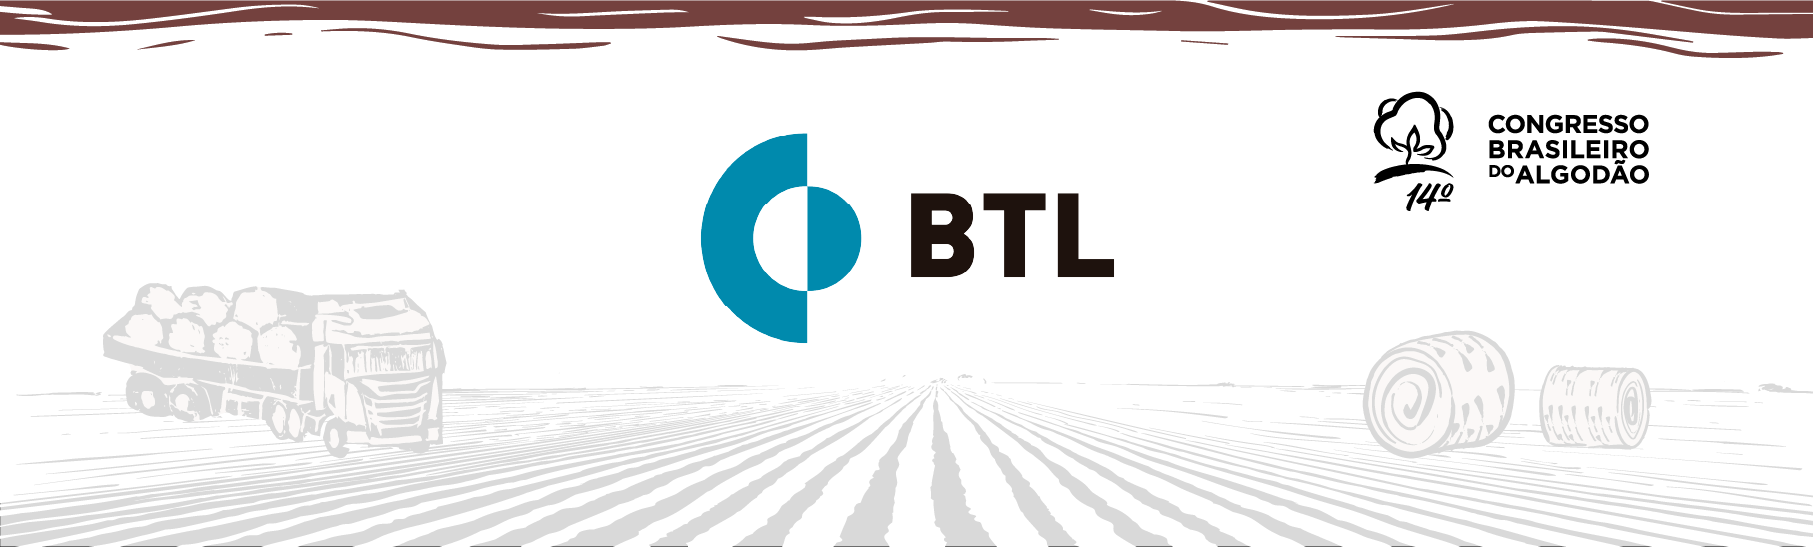 BTL apresentará tecnologias que conferem credibilidade nas operações de comércio exterior no agronegócio brasileiro e com grande experiência na cotonicultura, no 14º CBA